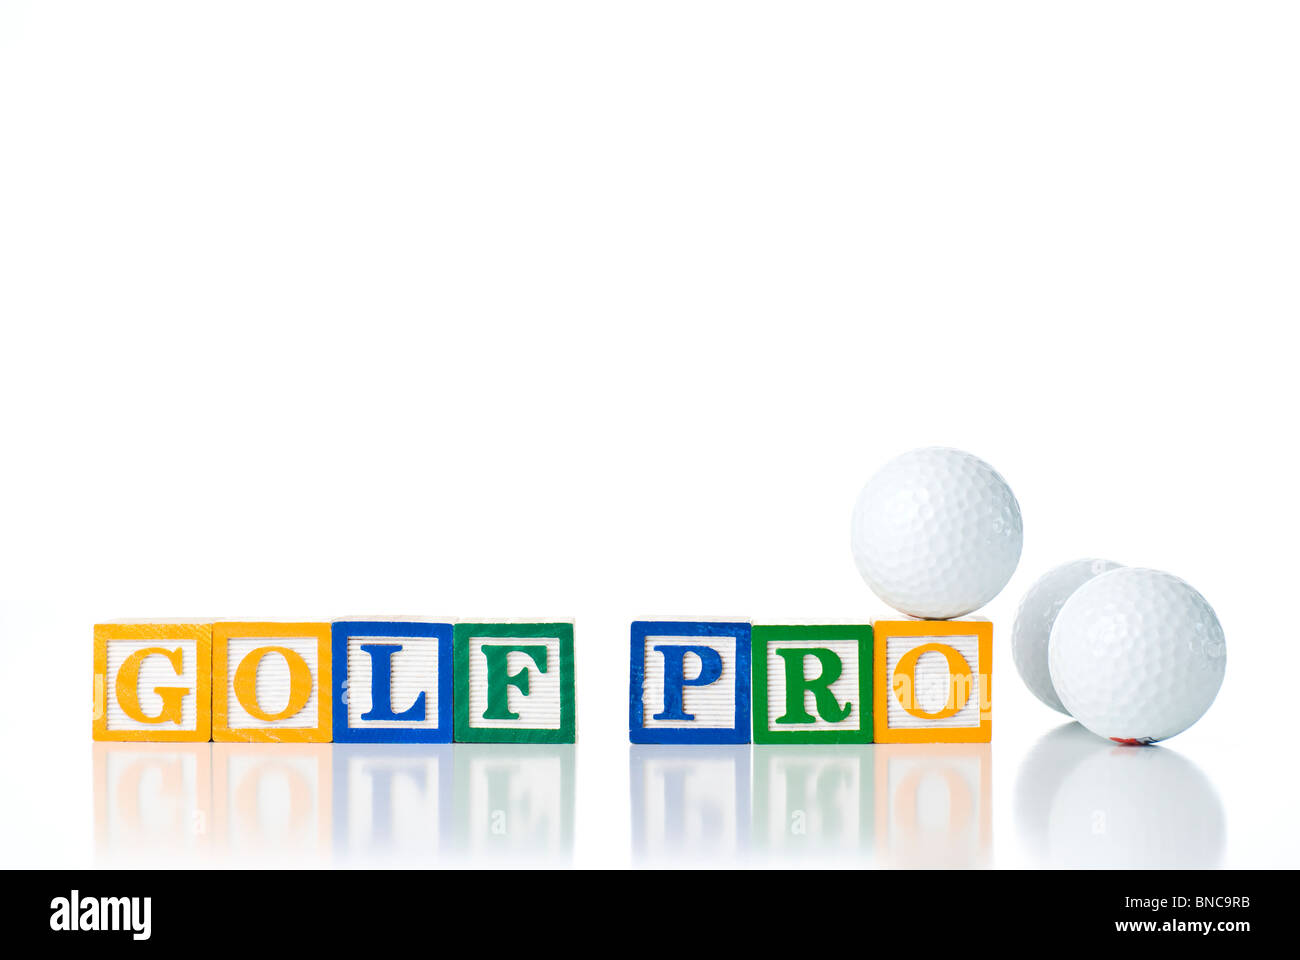 Enfants colorés blocks spelling GOLF PRO avec des balles de golf Banque D'Images